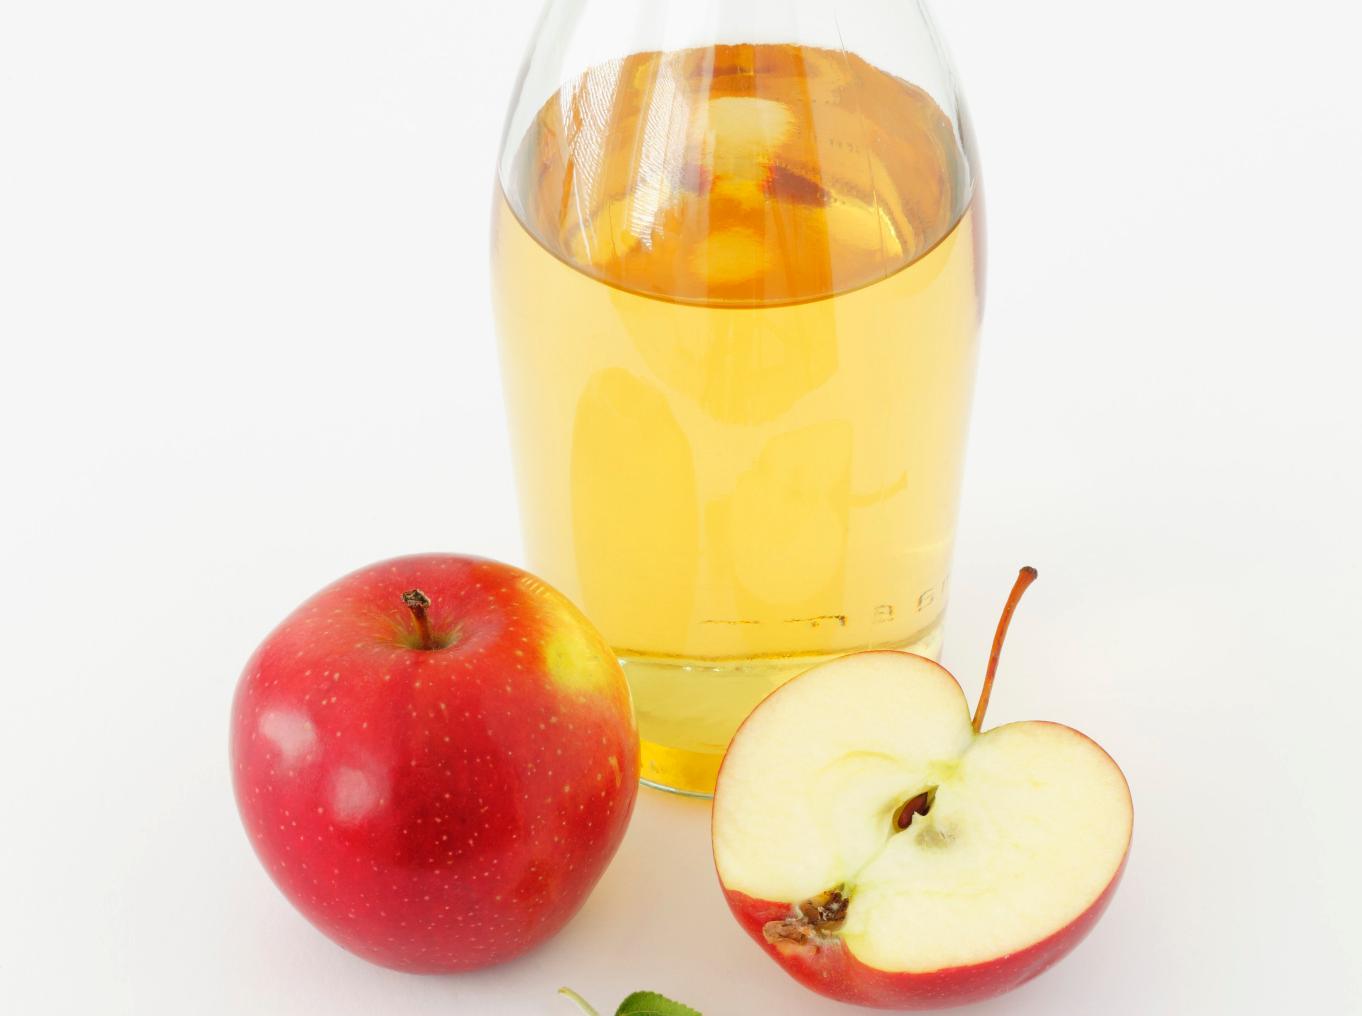 苹果醋怎么喝才正确 苹果醋的正确喝法 - 汽车时代网